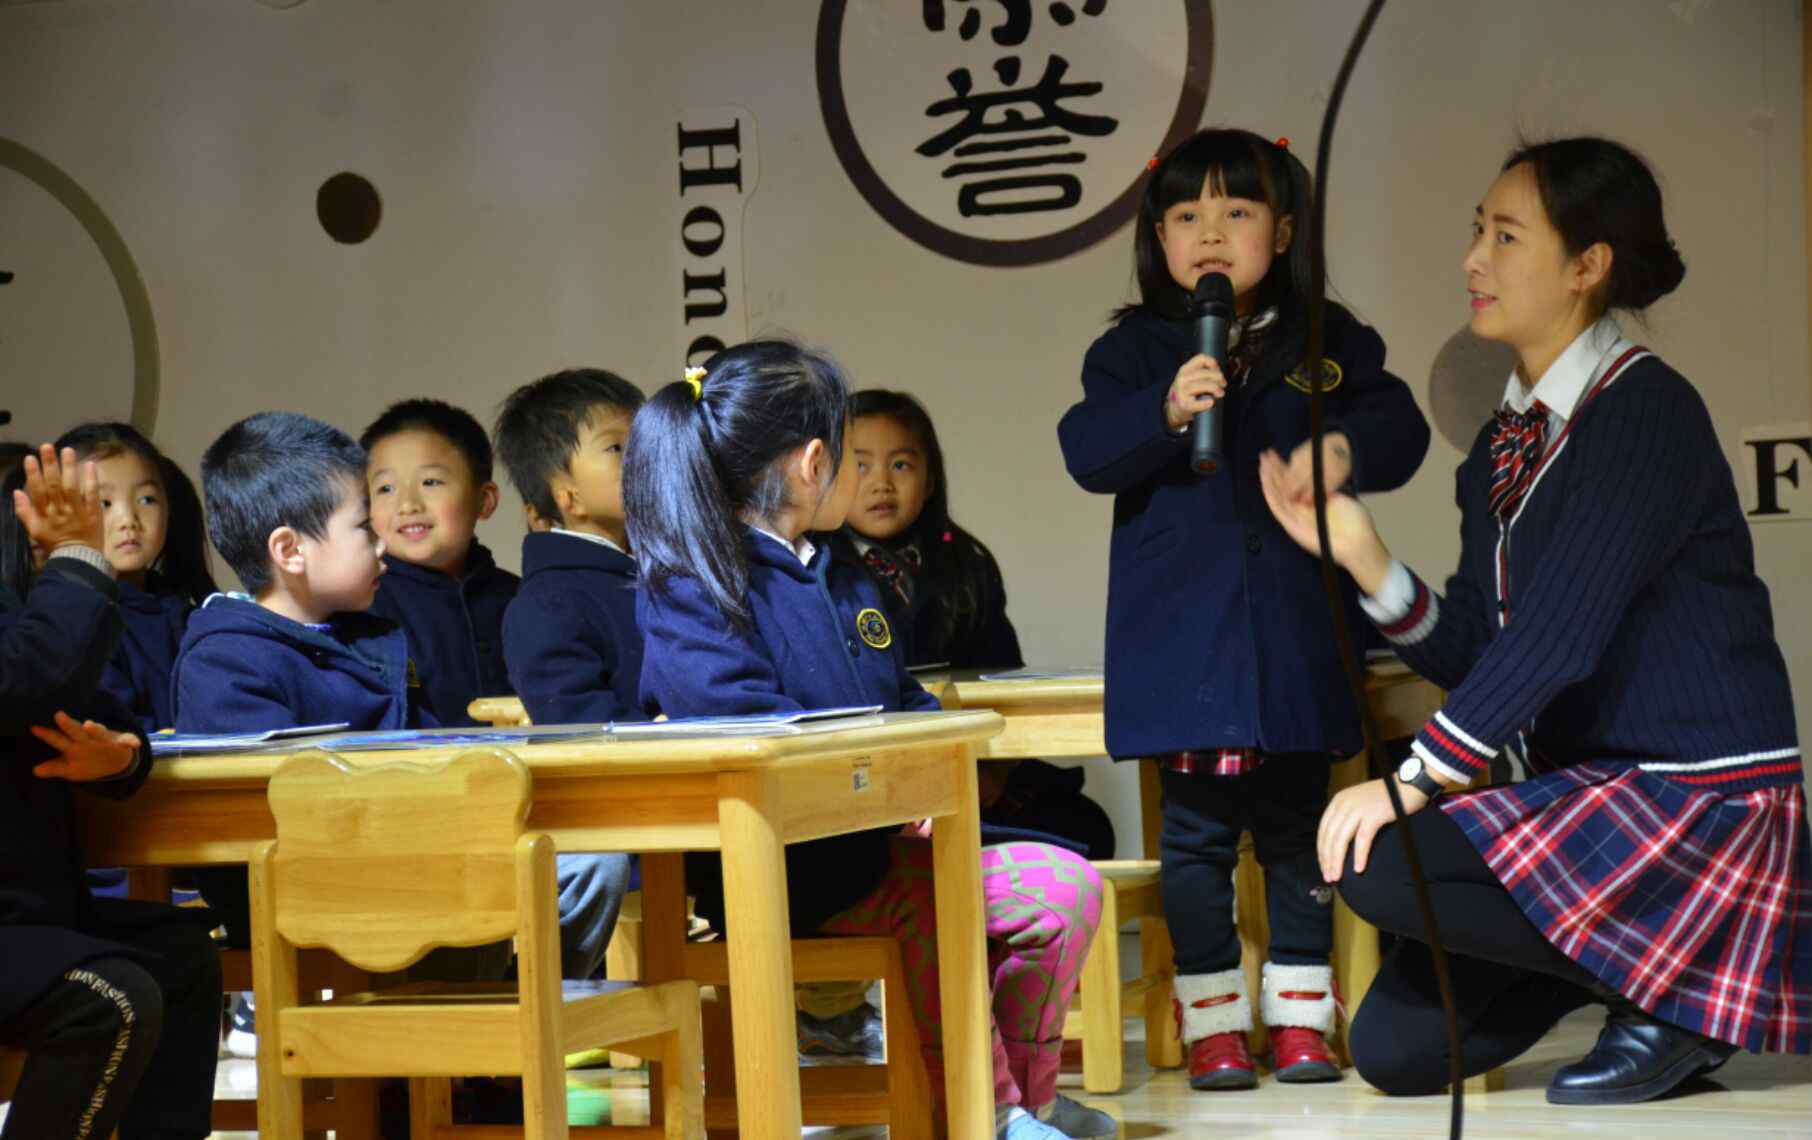 德阳外国语幼儿园 祝贺艾贝尔教育集团旗下三所幼儿园成为德阳外国语学校“小幼衔接教育实验基地”